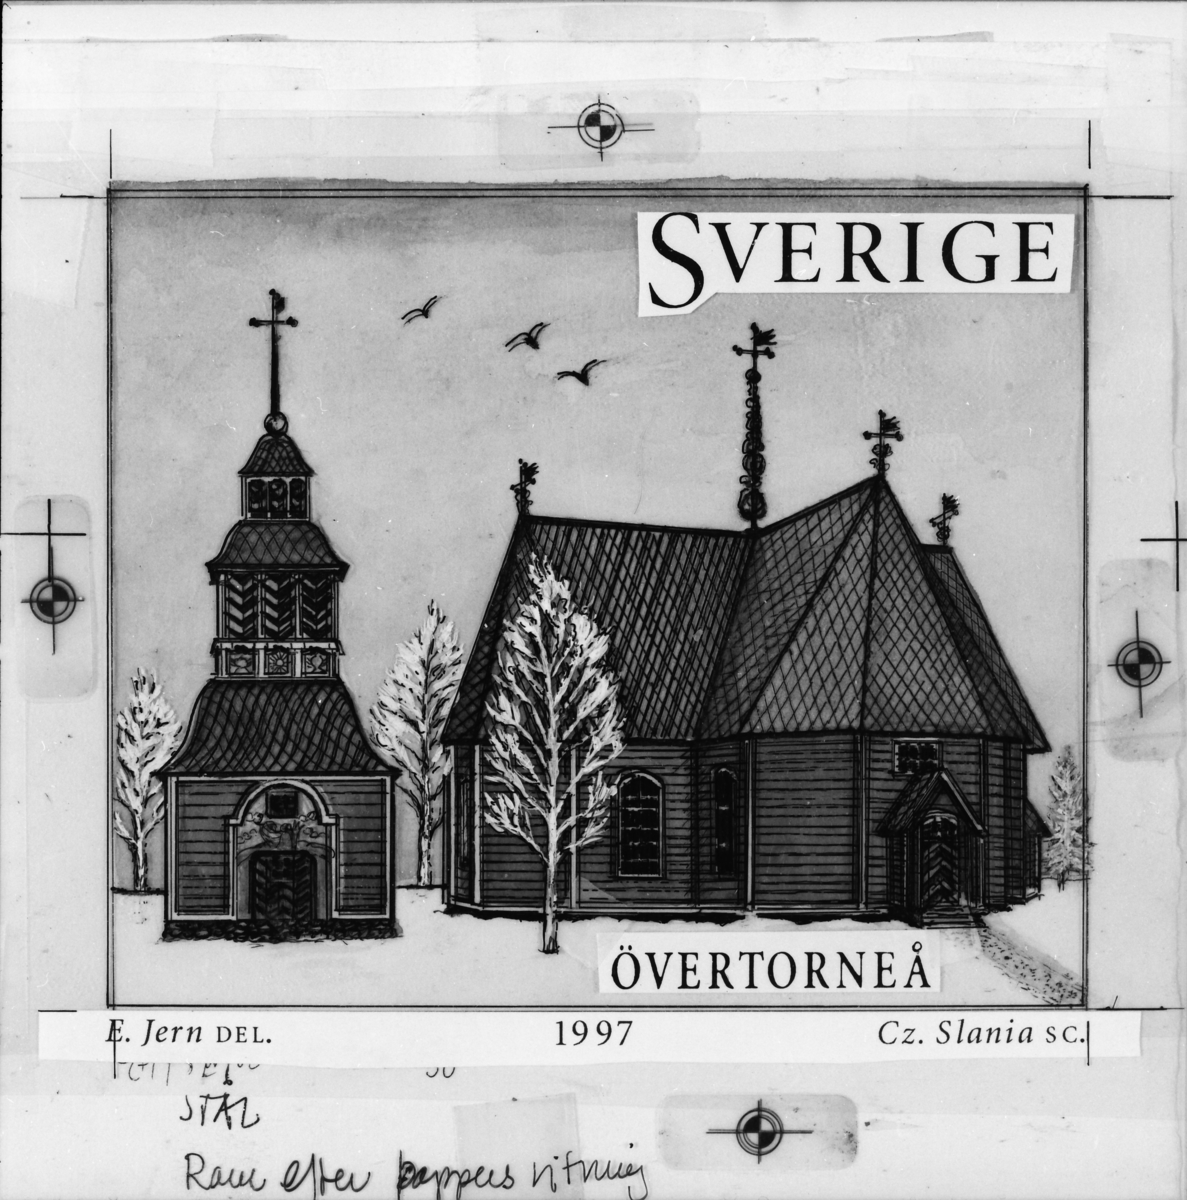 Originalteckning till frimärket "ÖverTorneå kyrka" för frimärksutgåvan Svenska hus 3, kyrkor, 1997.